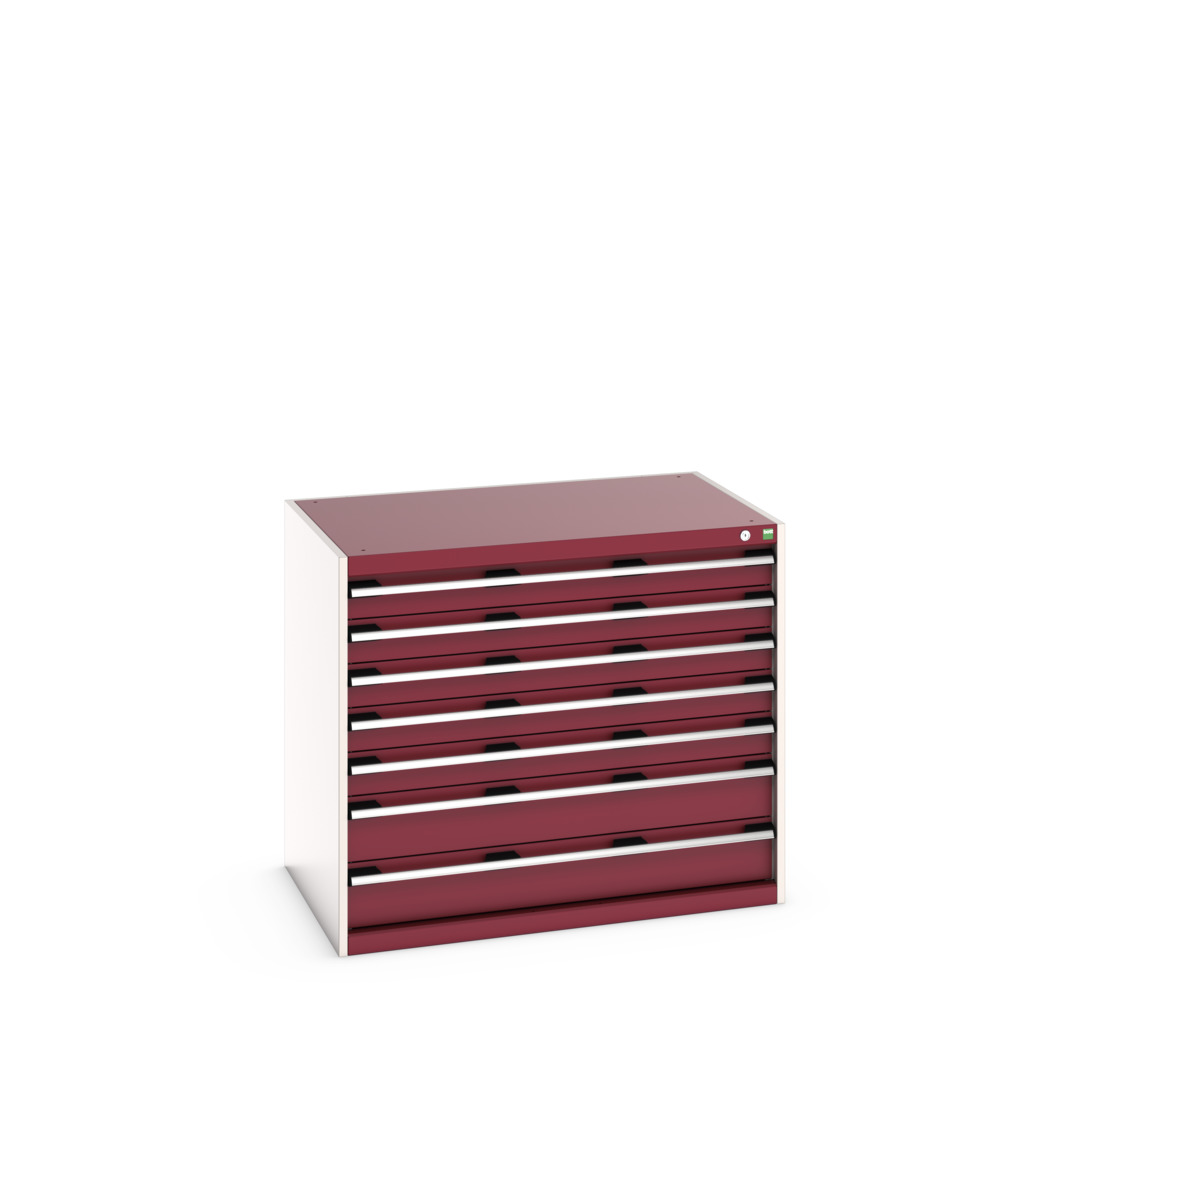 40029091.24V - cubio drawer cabinet